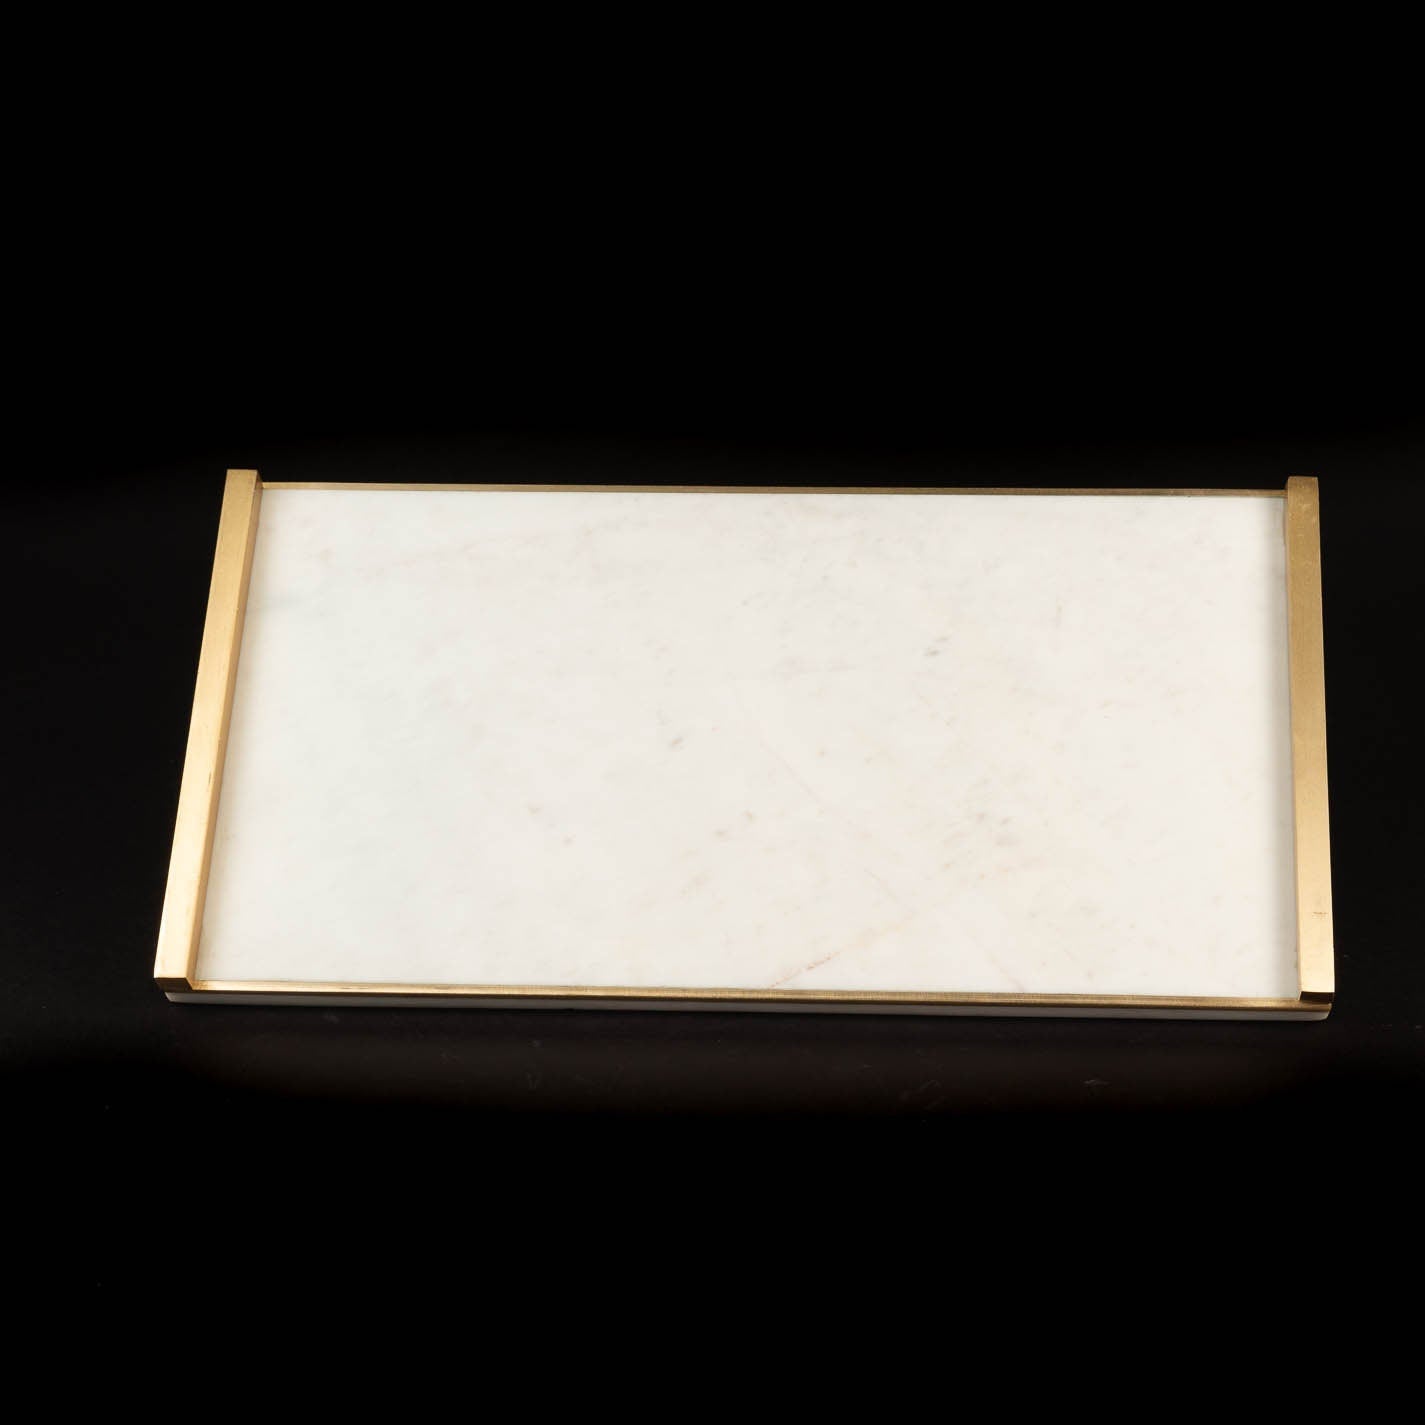 Large White Marble Tray w/ Gold Handles (18" x 9") | White Marble Tray | Decorative Tray | Serving Tray | Layering Tray | Marble Centerpiece - DiamondValeDecor